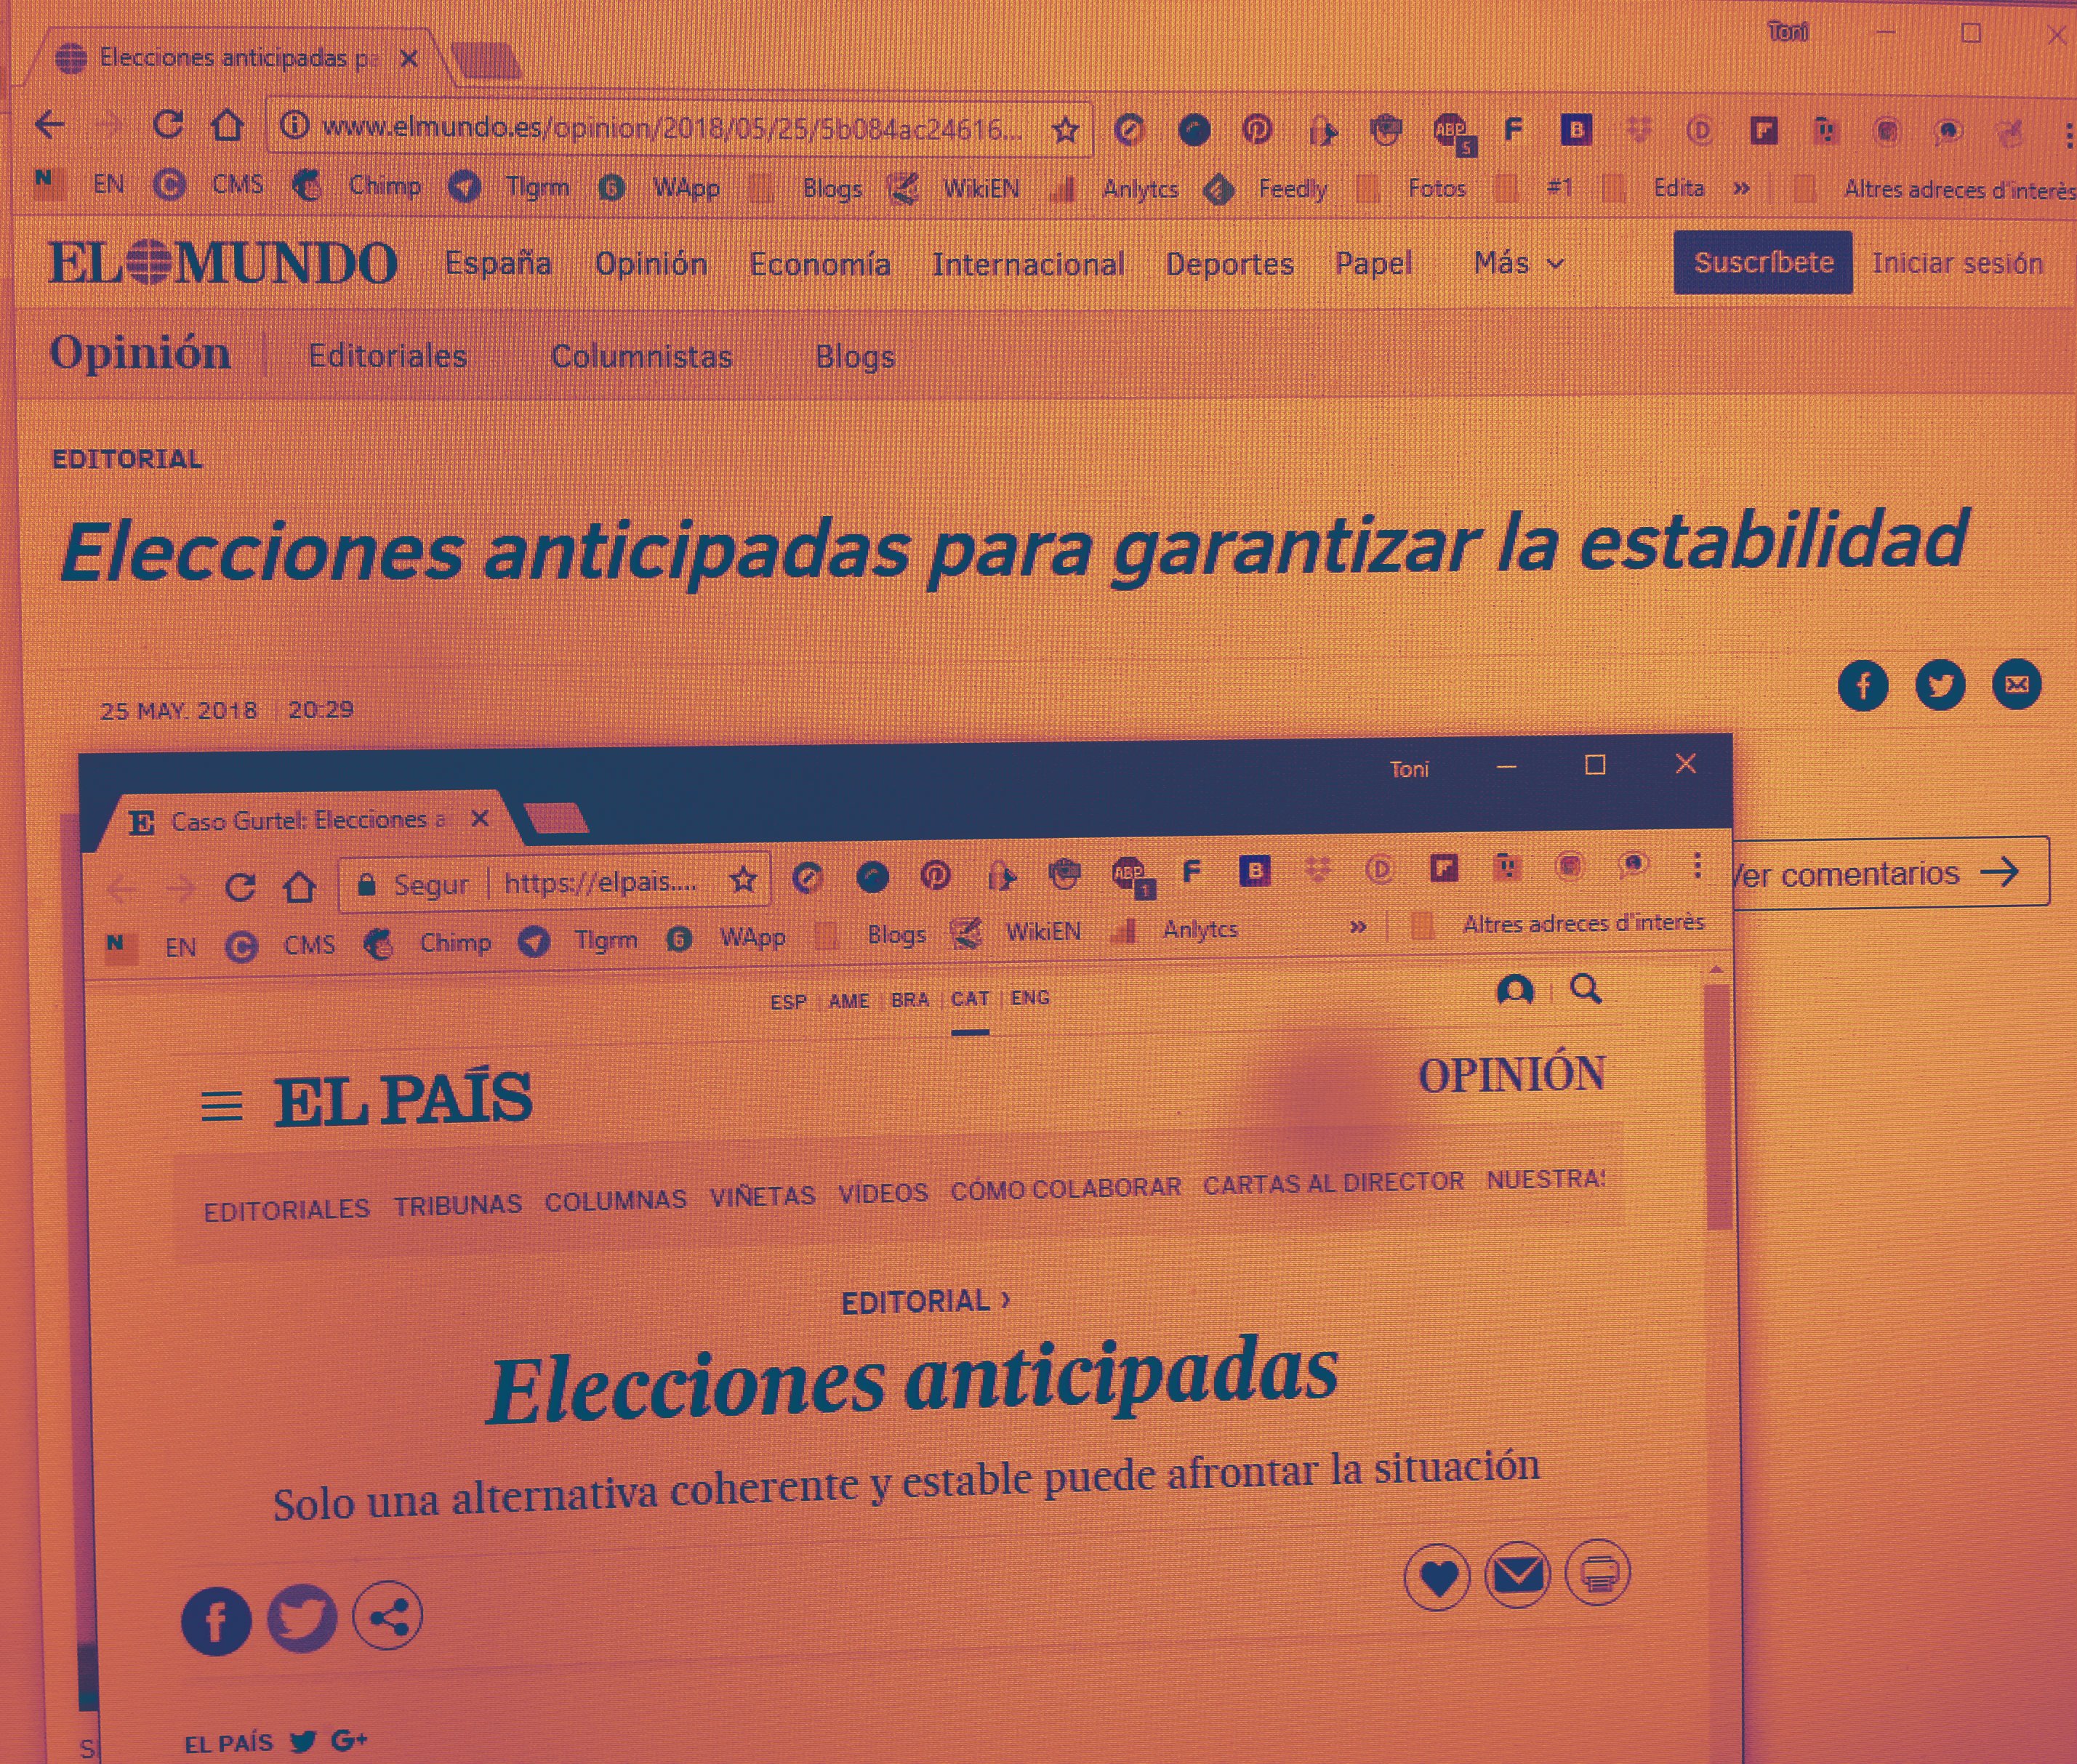 'El País' i 'El Mundo' fan manetes amb Cs i exigeixen eleccions